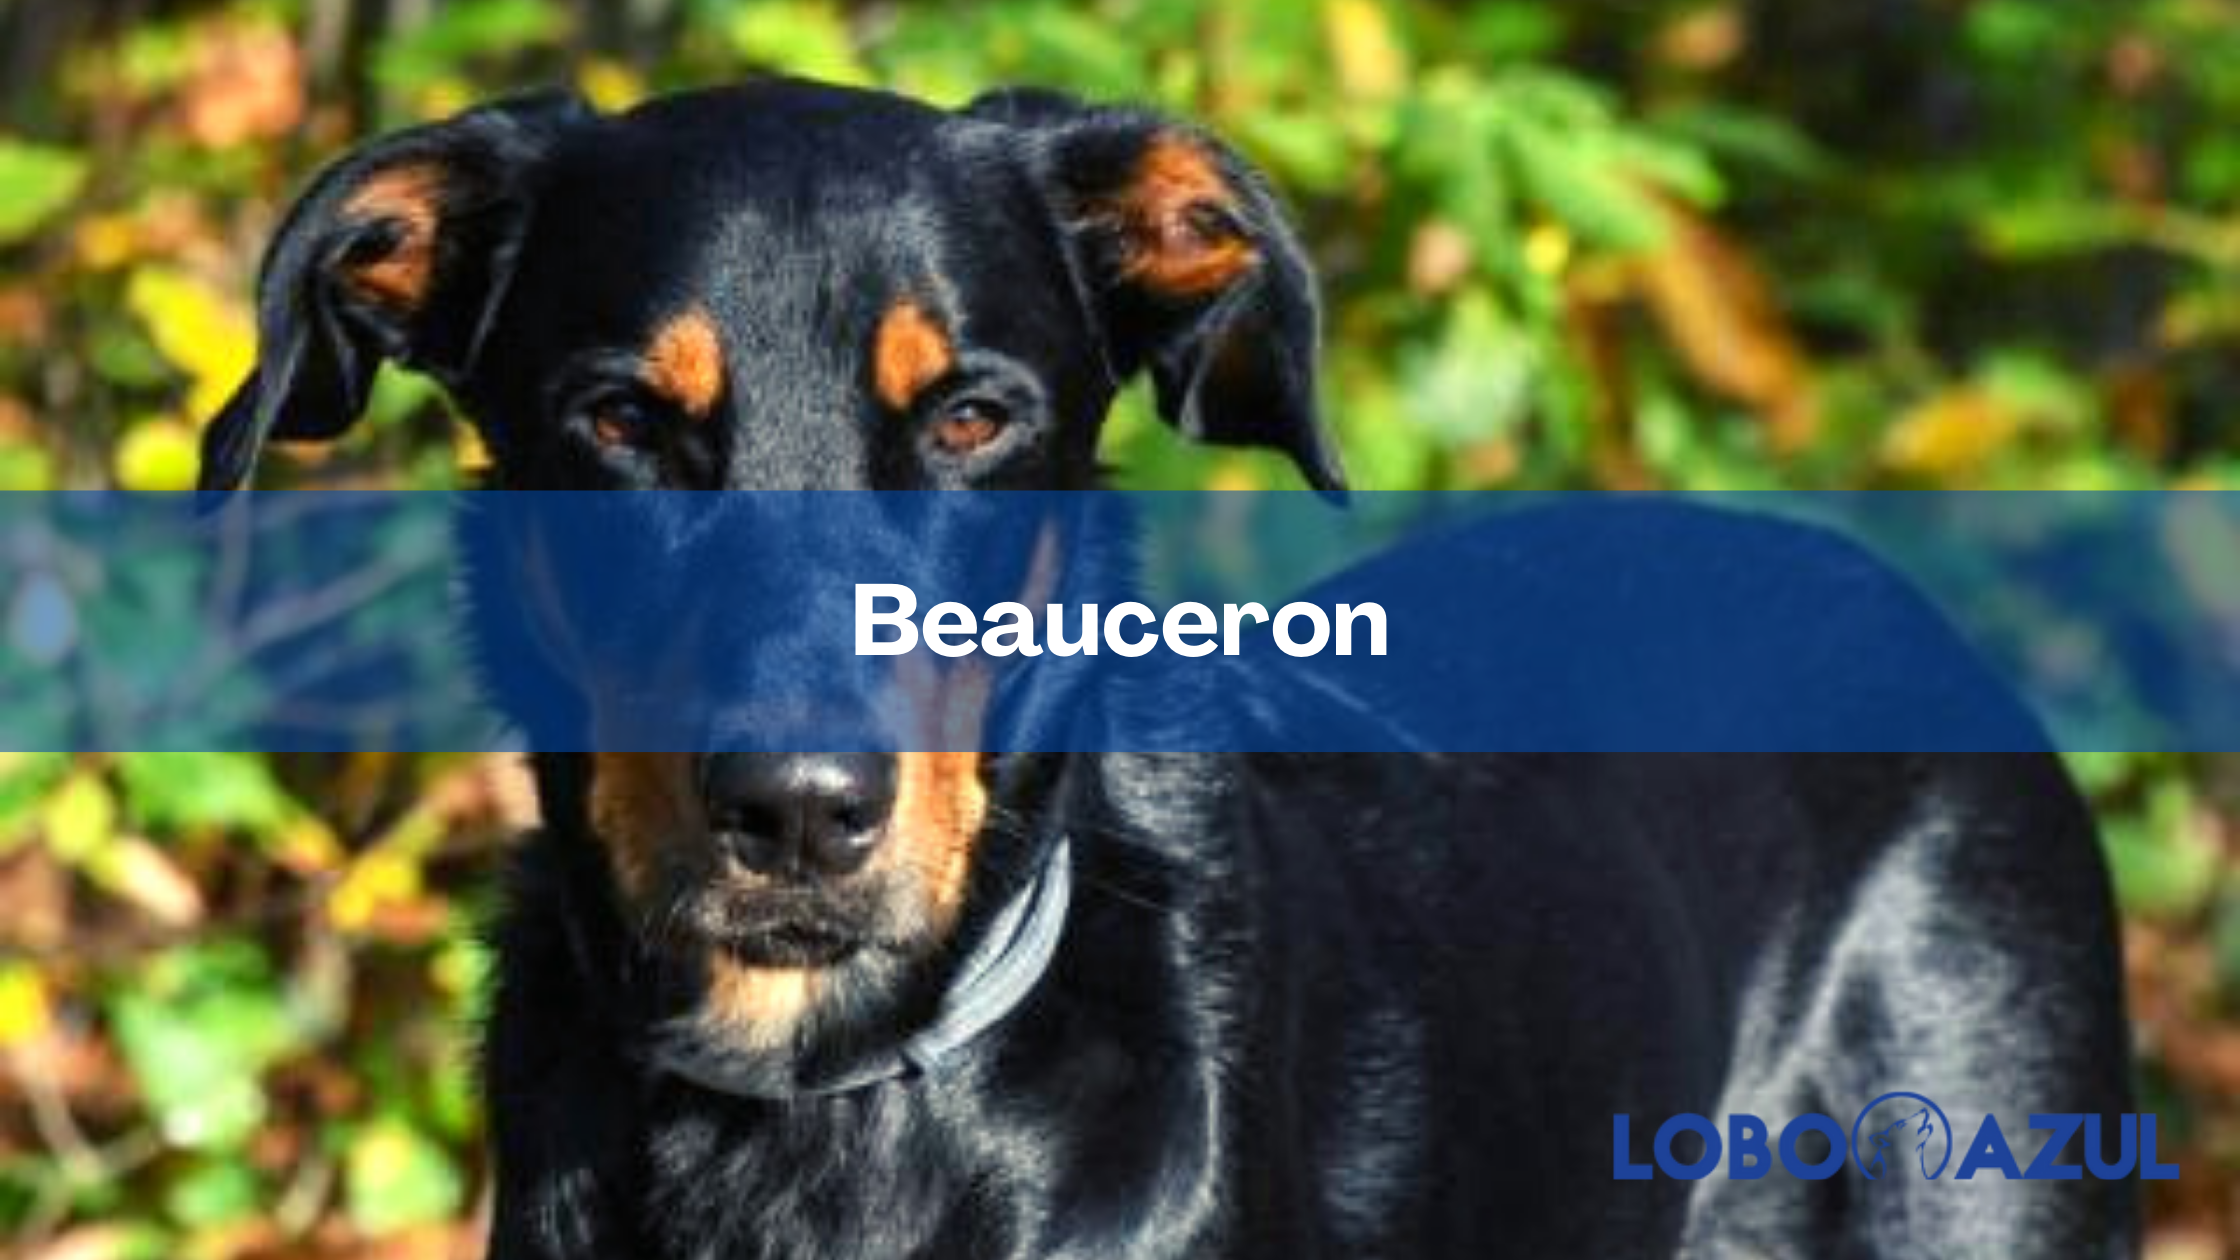 Beauceron - Inteligencia y energía en un solo perro